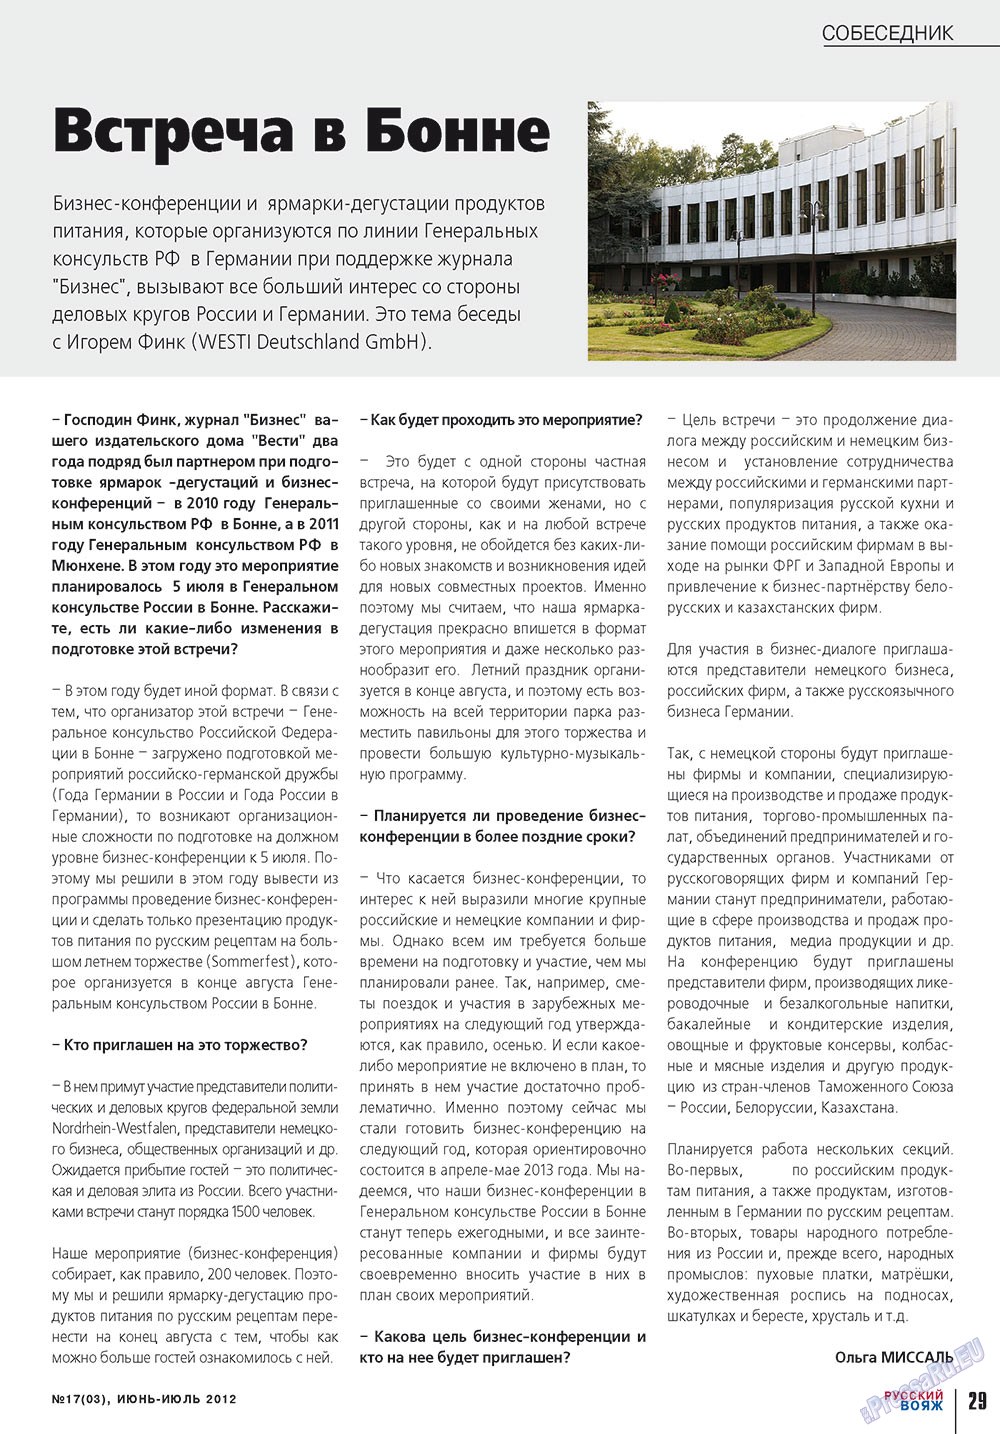 Русский вояж, журнал. 2012 №17 стр.29